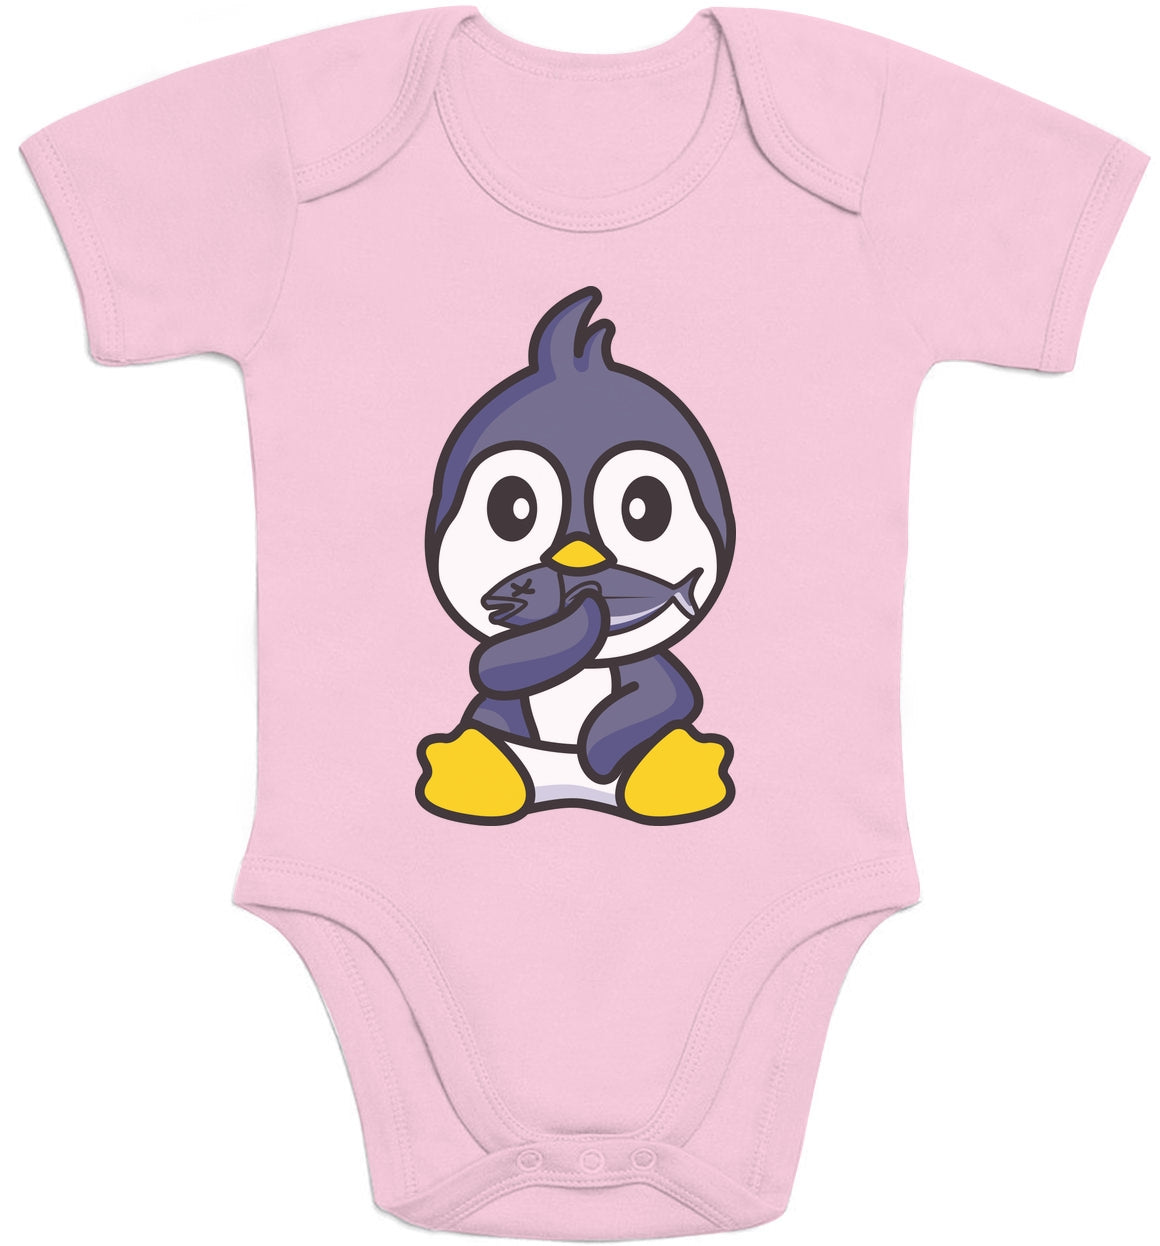 Baby Body Pinguin Baby Kleidung Neugeborene Mädchen Junge Baby Body Kurzarm-Body